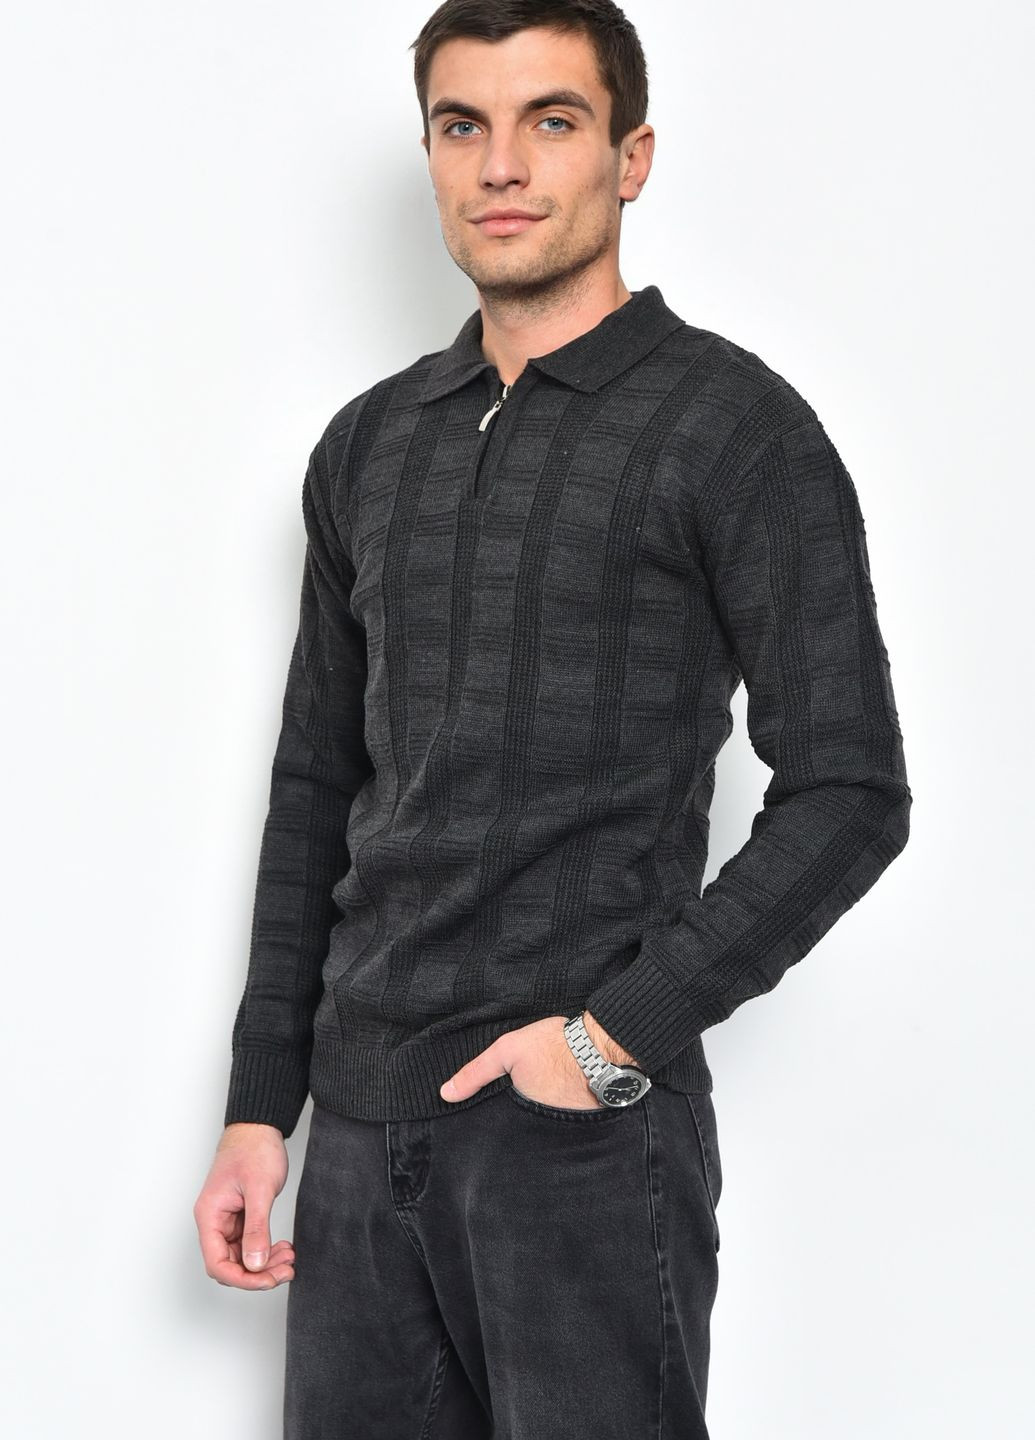 Темно-серый демисезонный свитер мужской темно-серого цвета акриловый пуловер Let's Shop